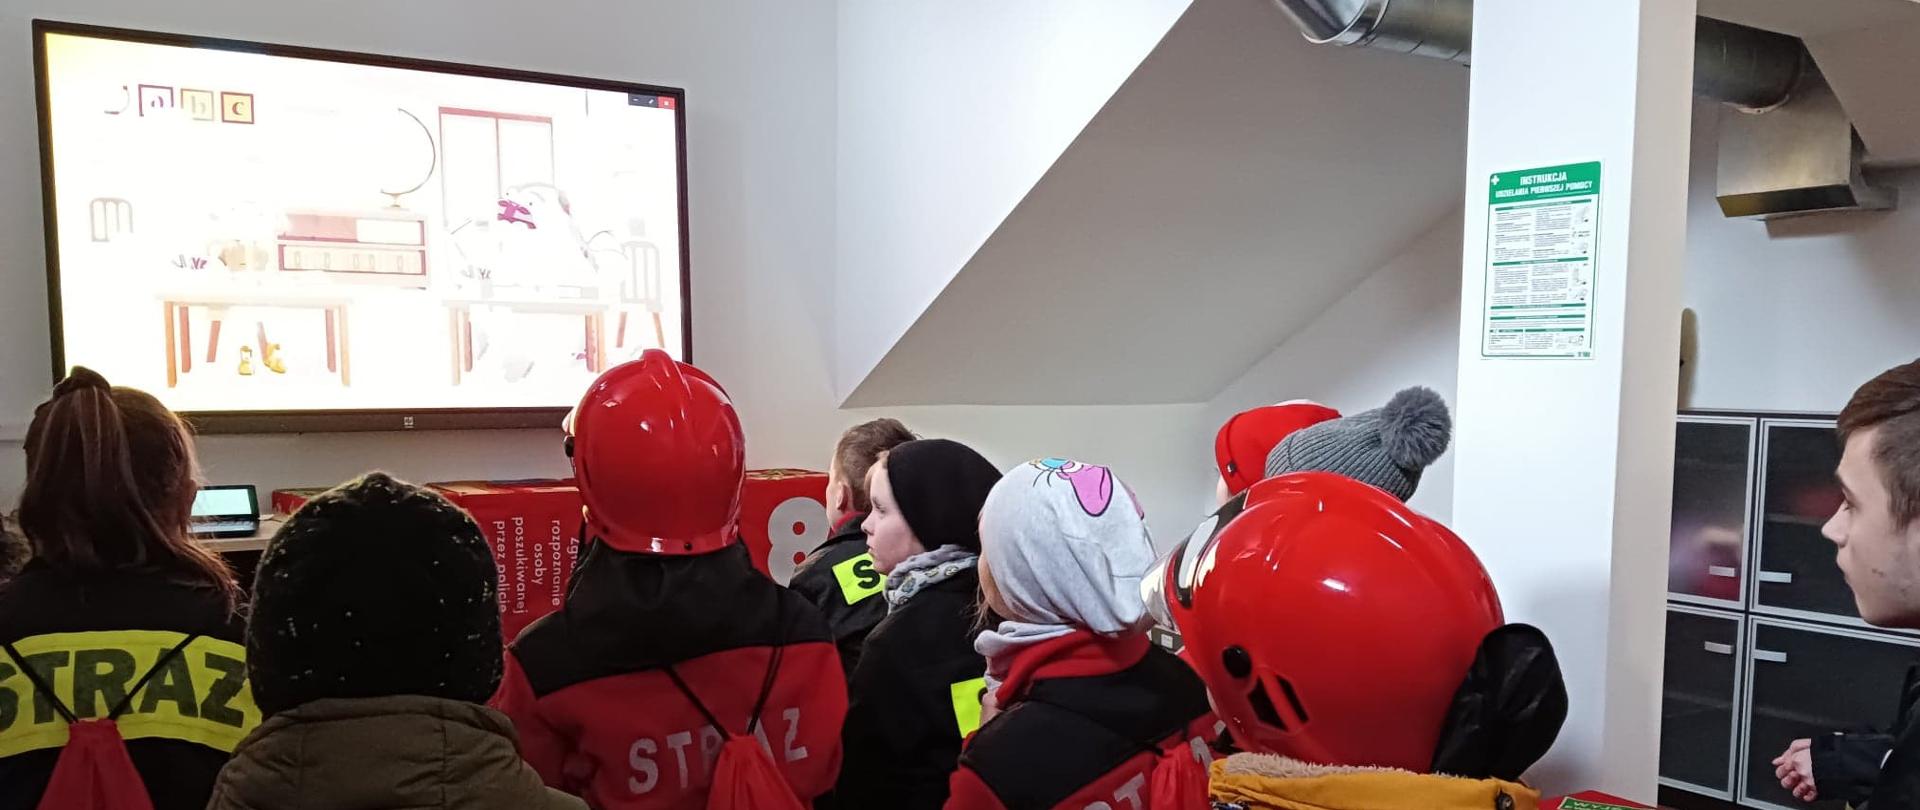 Grupa dzieci podczas oglądania filmów edukacyjnych w sali znajdującej się w budynku straży pożarnej w Pruszczu Gdańskim